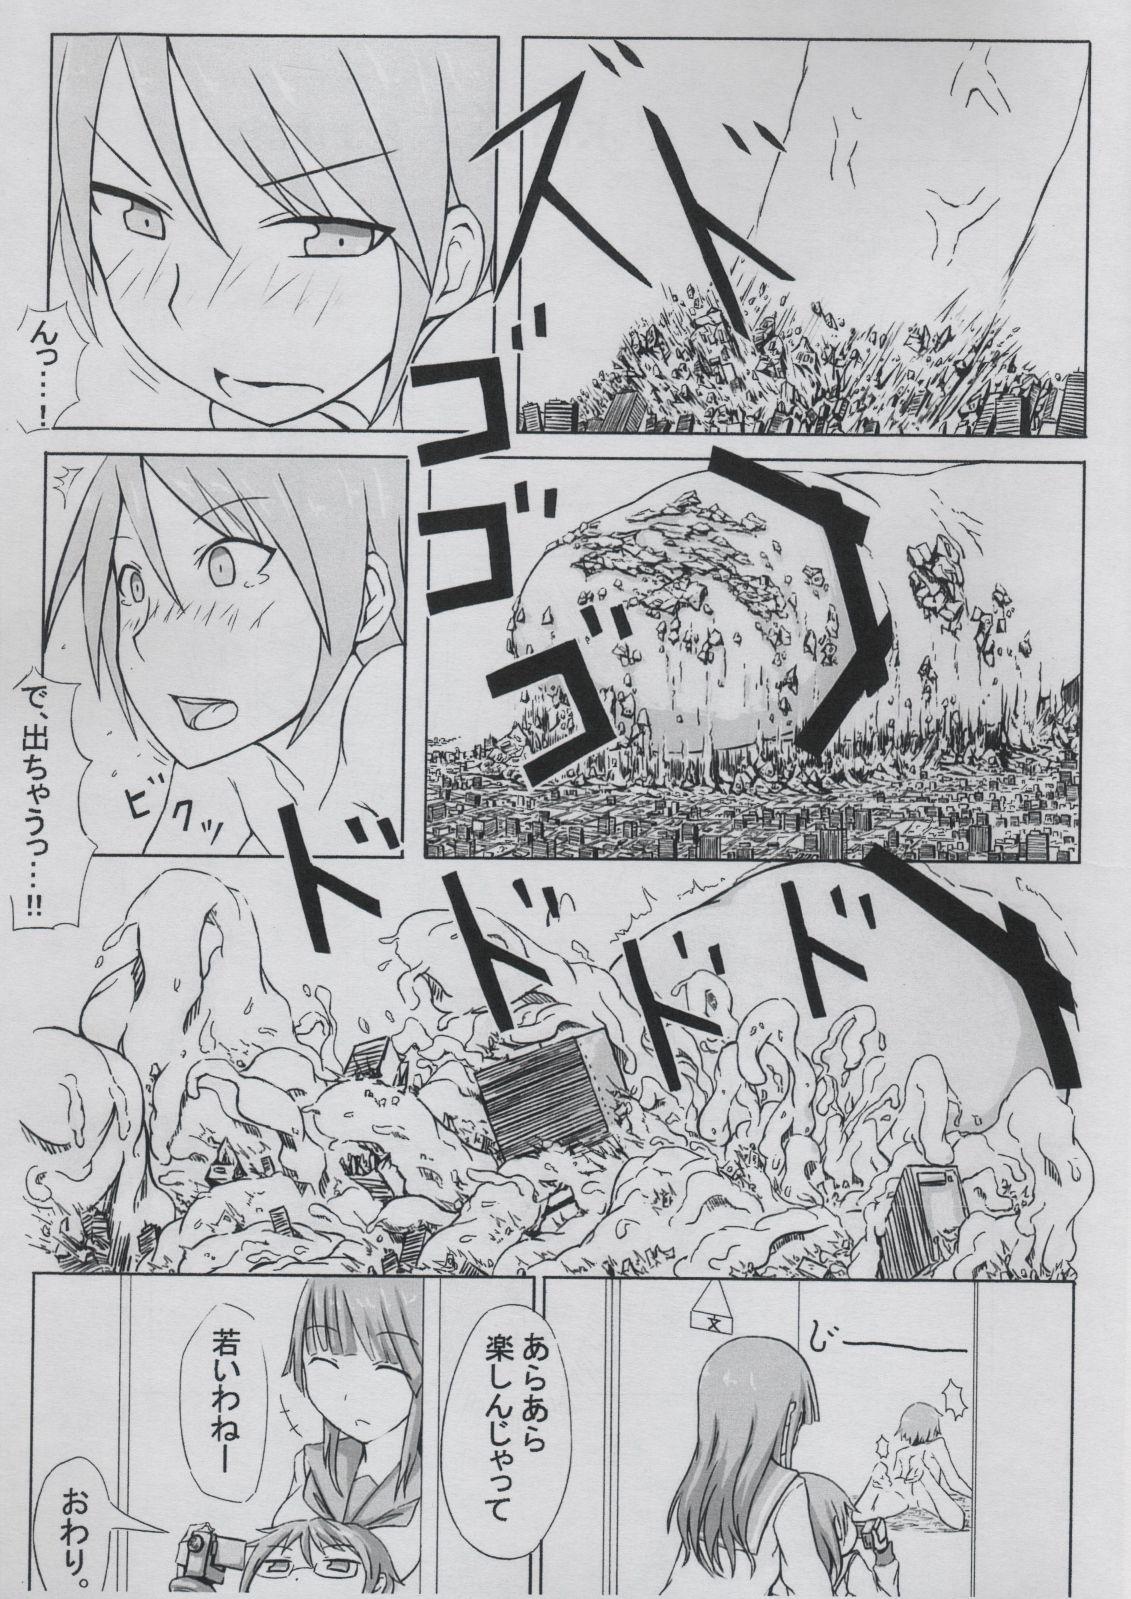 Hardcore giant boy manga - Original Older - Page 5